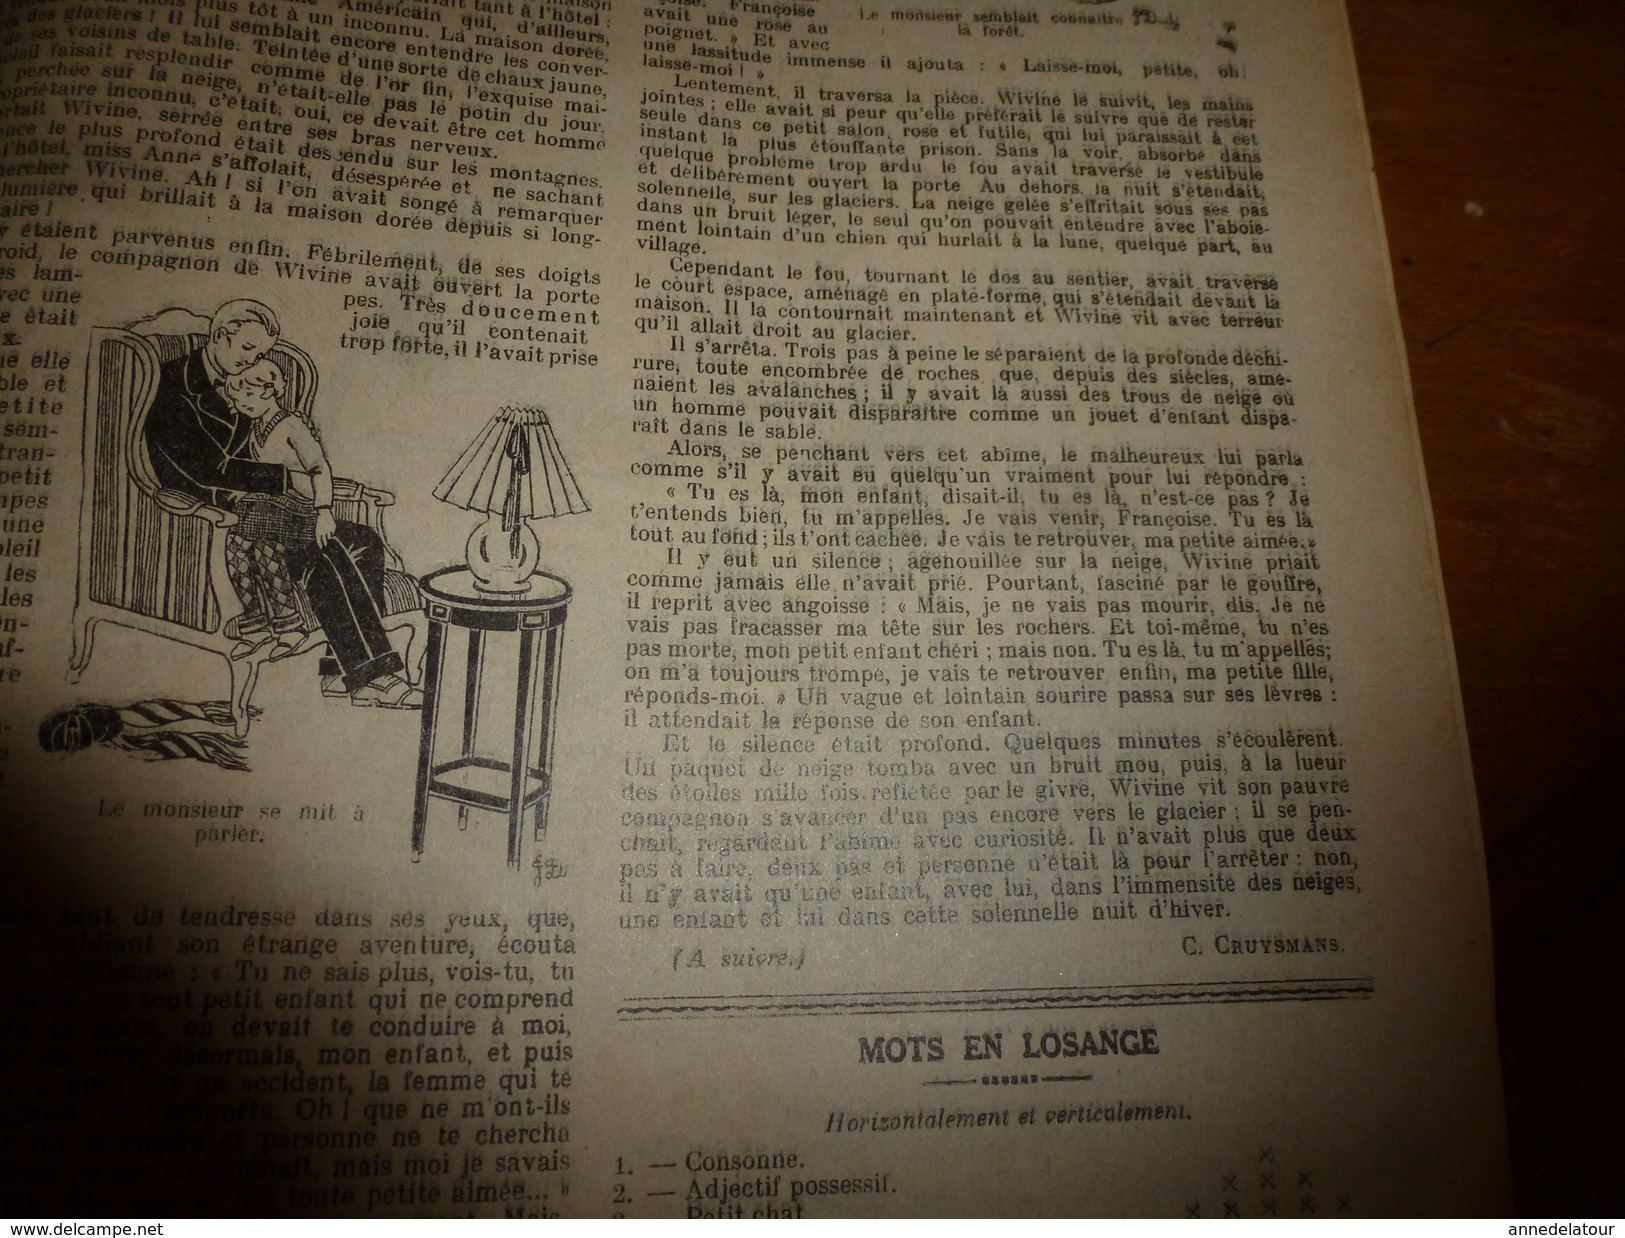 1931 LSDS  Bécassine fait du scoutisme (Pour obéir à la Loi ); La kléptomanie de Miss Pattison (Le mystère du collier)